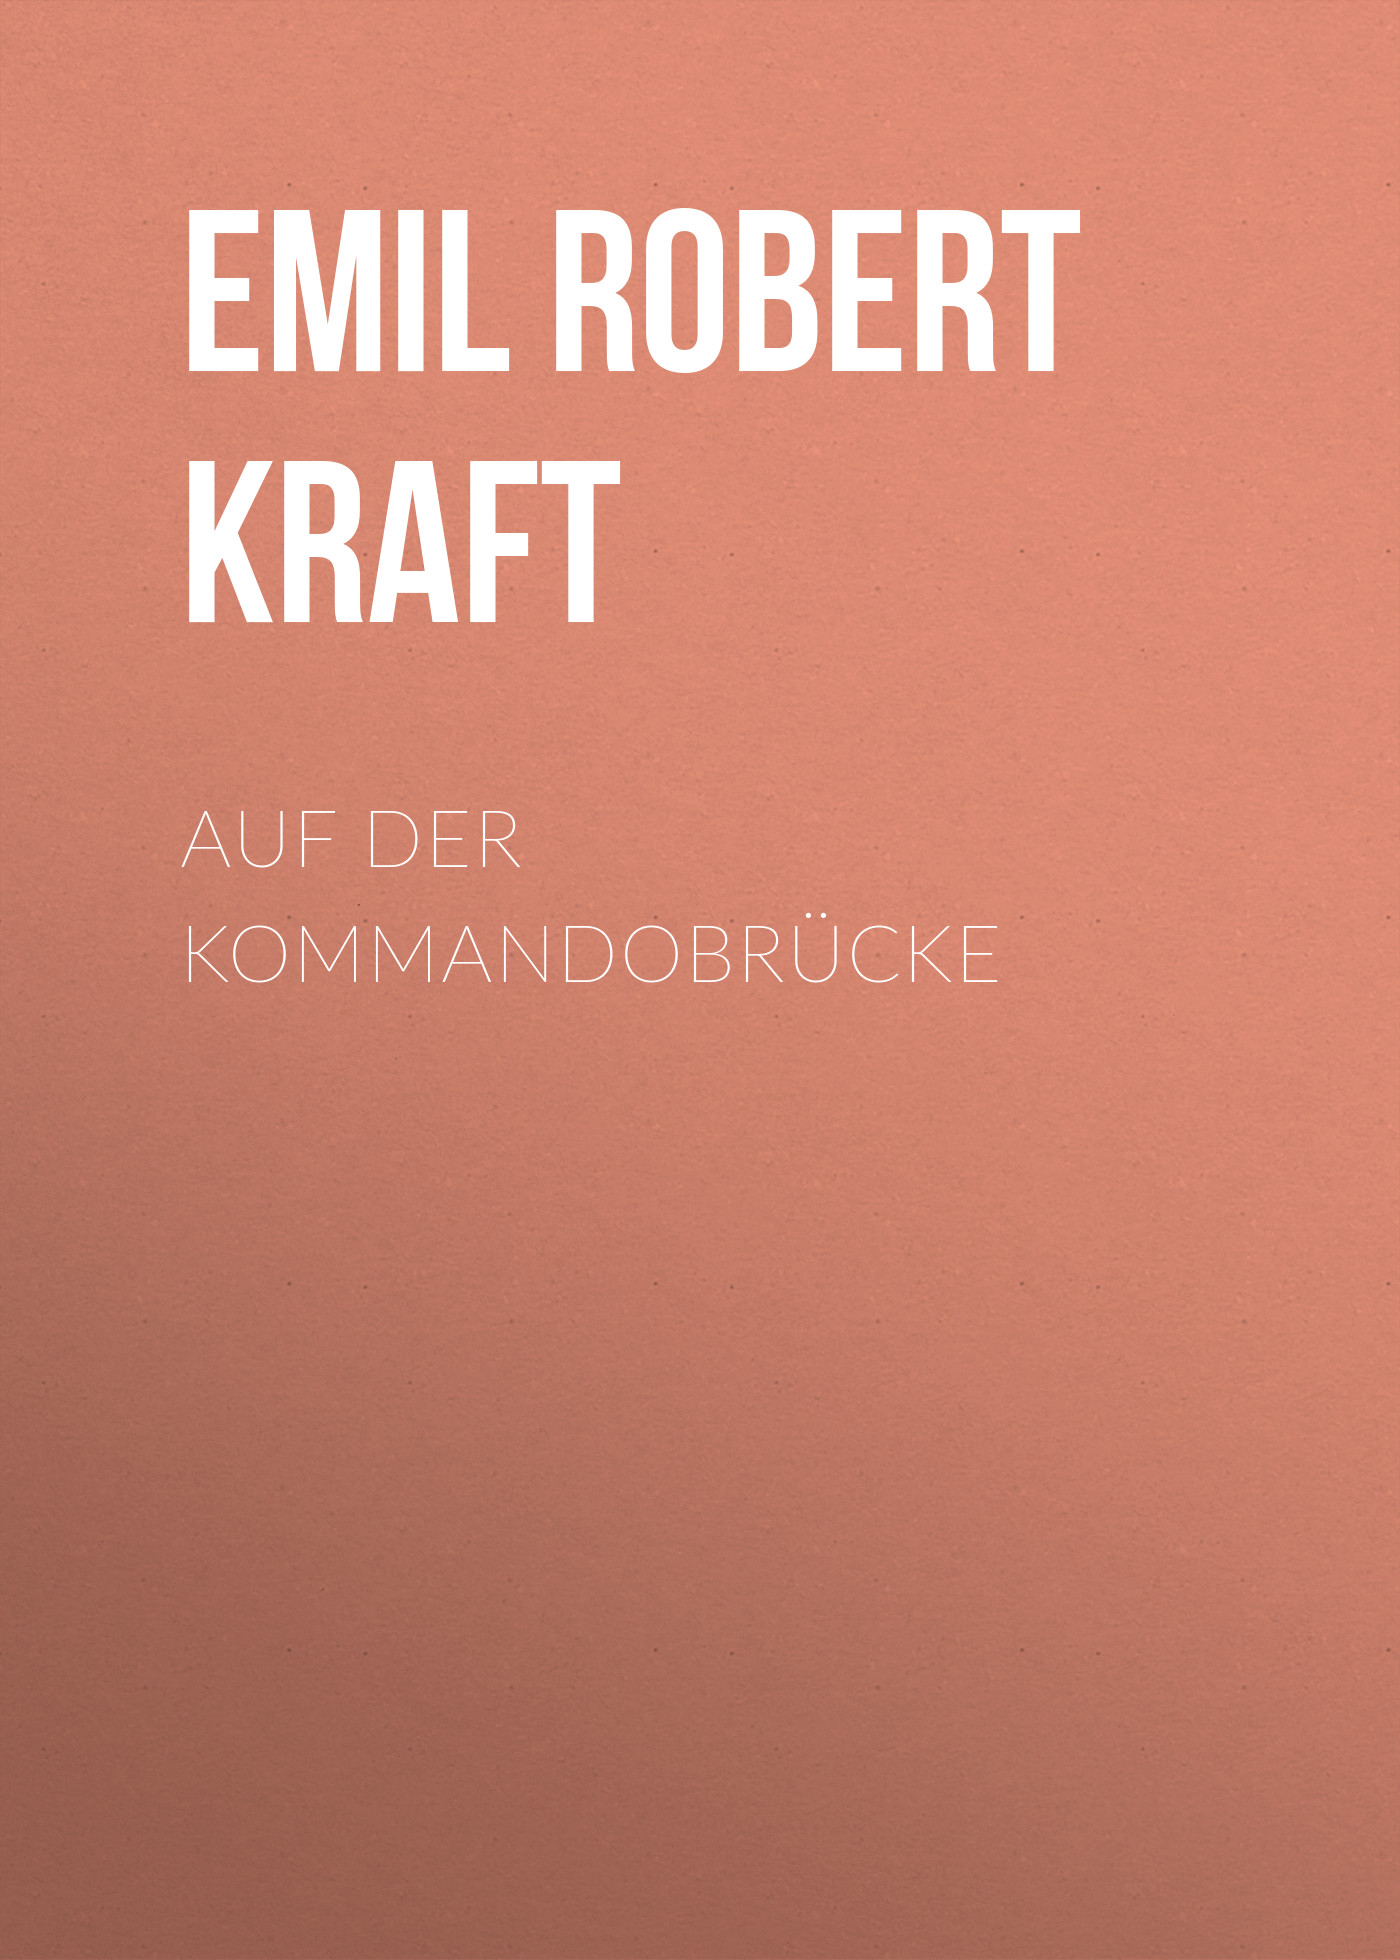 Книга Auf der Kommandobrücke из серии , созданная Emil Robert Kraft, может относится к жанру Зарубежная классика. Стоимость электронной книги Auf der Kommandobrücke с идентификатором 48633116 составляет 0 руб.